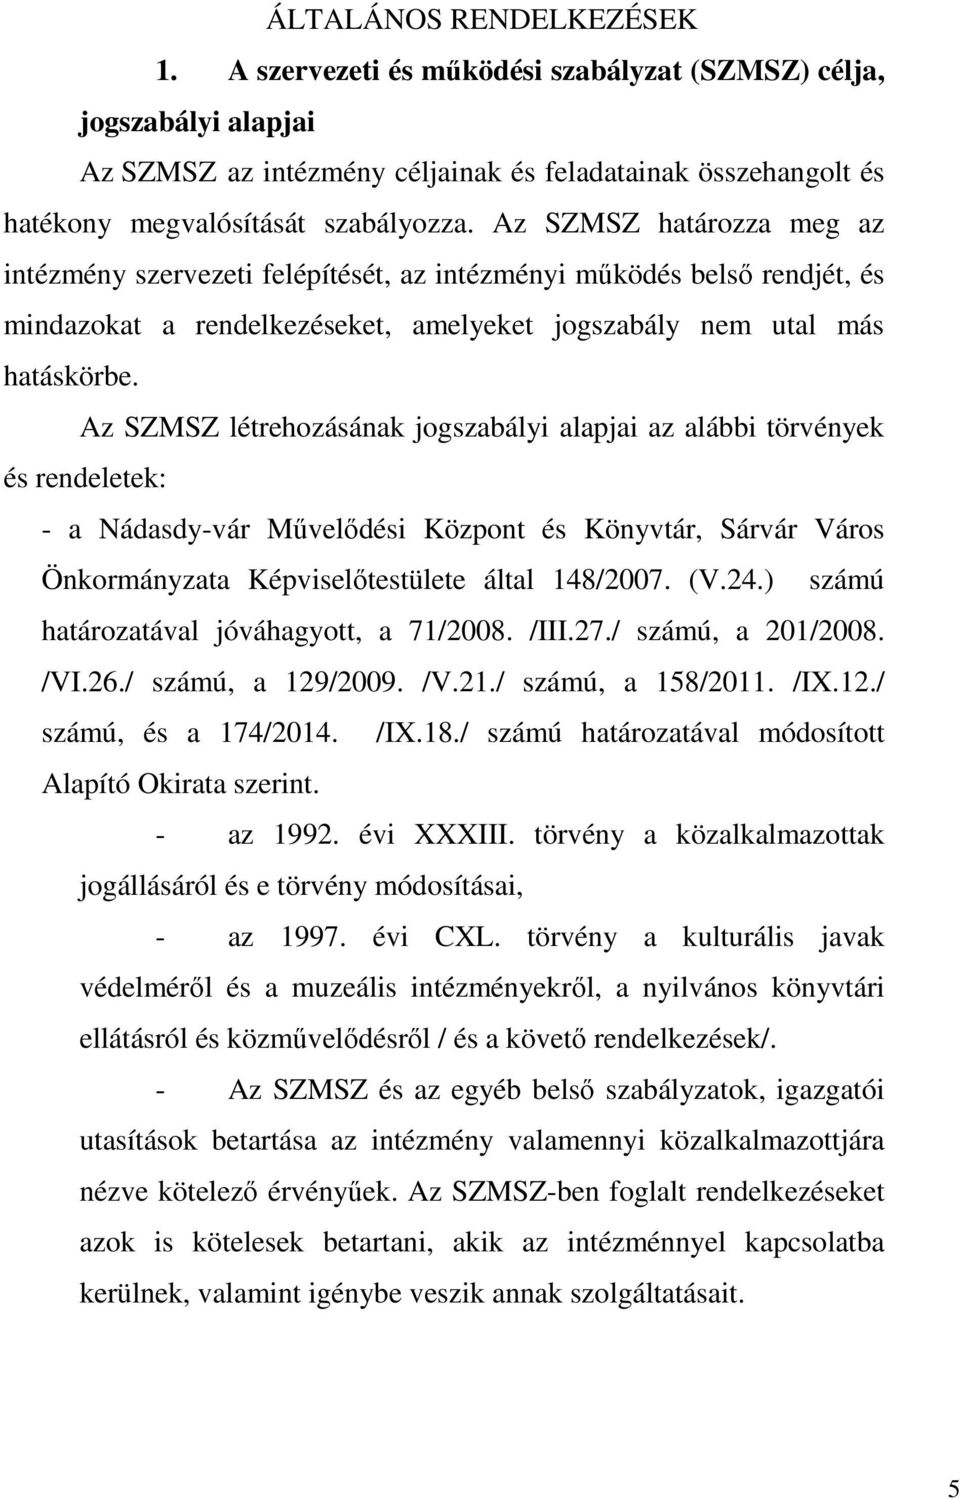 Az SZMSZ létrehozásának jogszabályi alapjai az alábbi törvények és rendeletek: - a Nádasdy-vár Művelődési Központ és Könyvtár, Sárvár Város Önkormányzata Képviselőtestülete által 148/2007. (V.24.